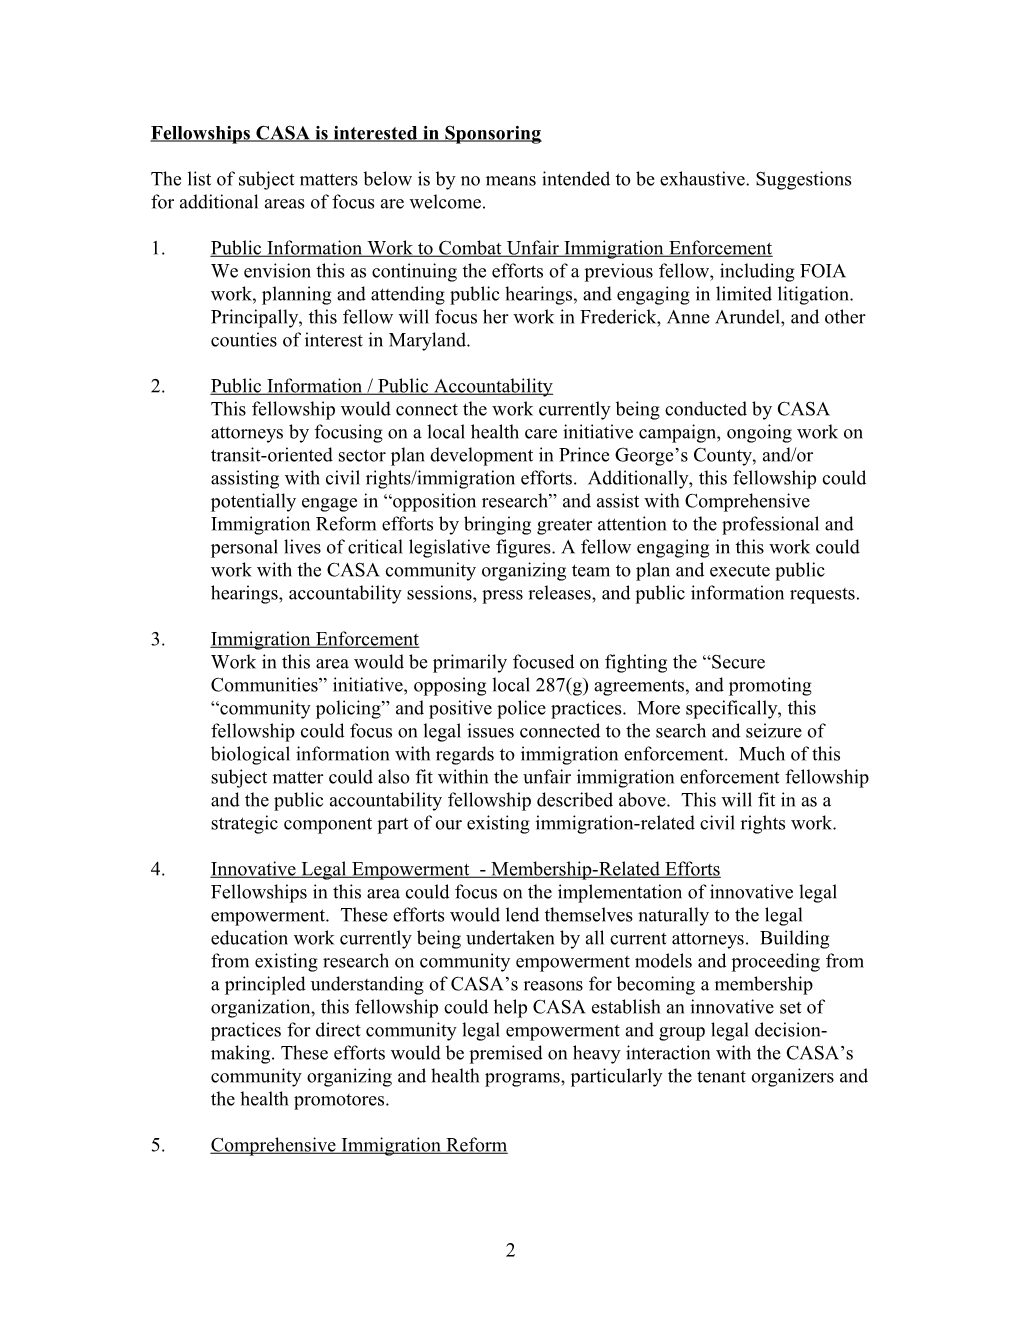 CASA De Maryland, Inc. Fellowship Interest Overview July 2009